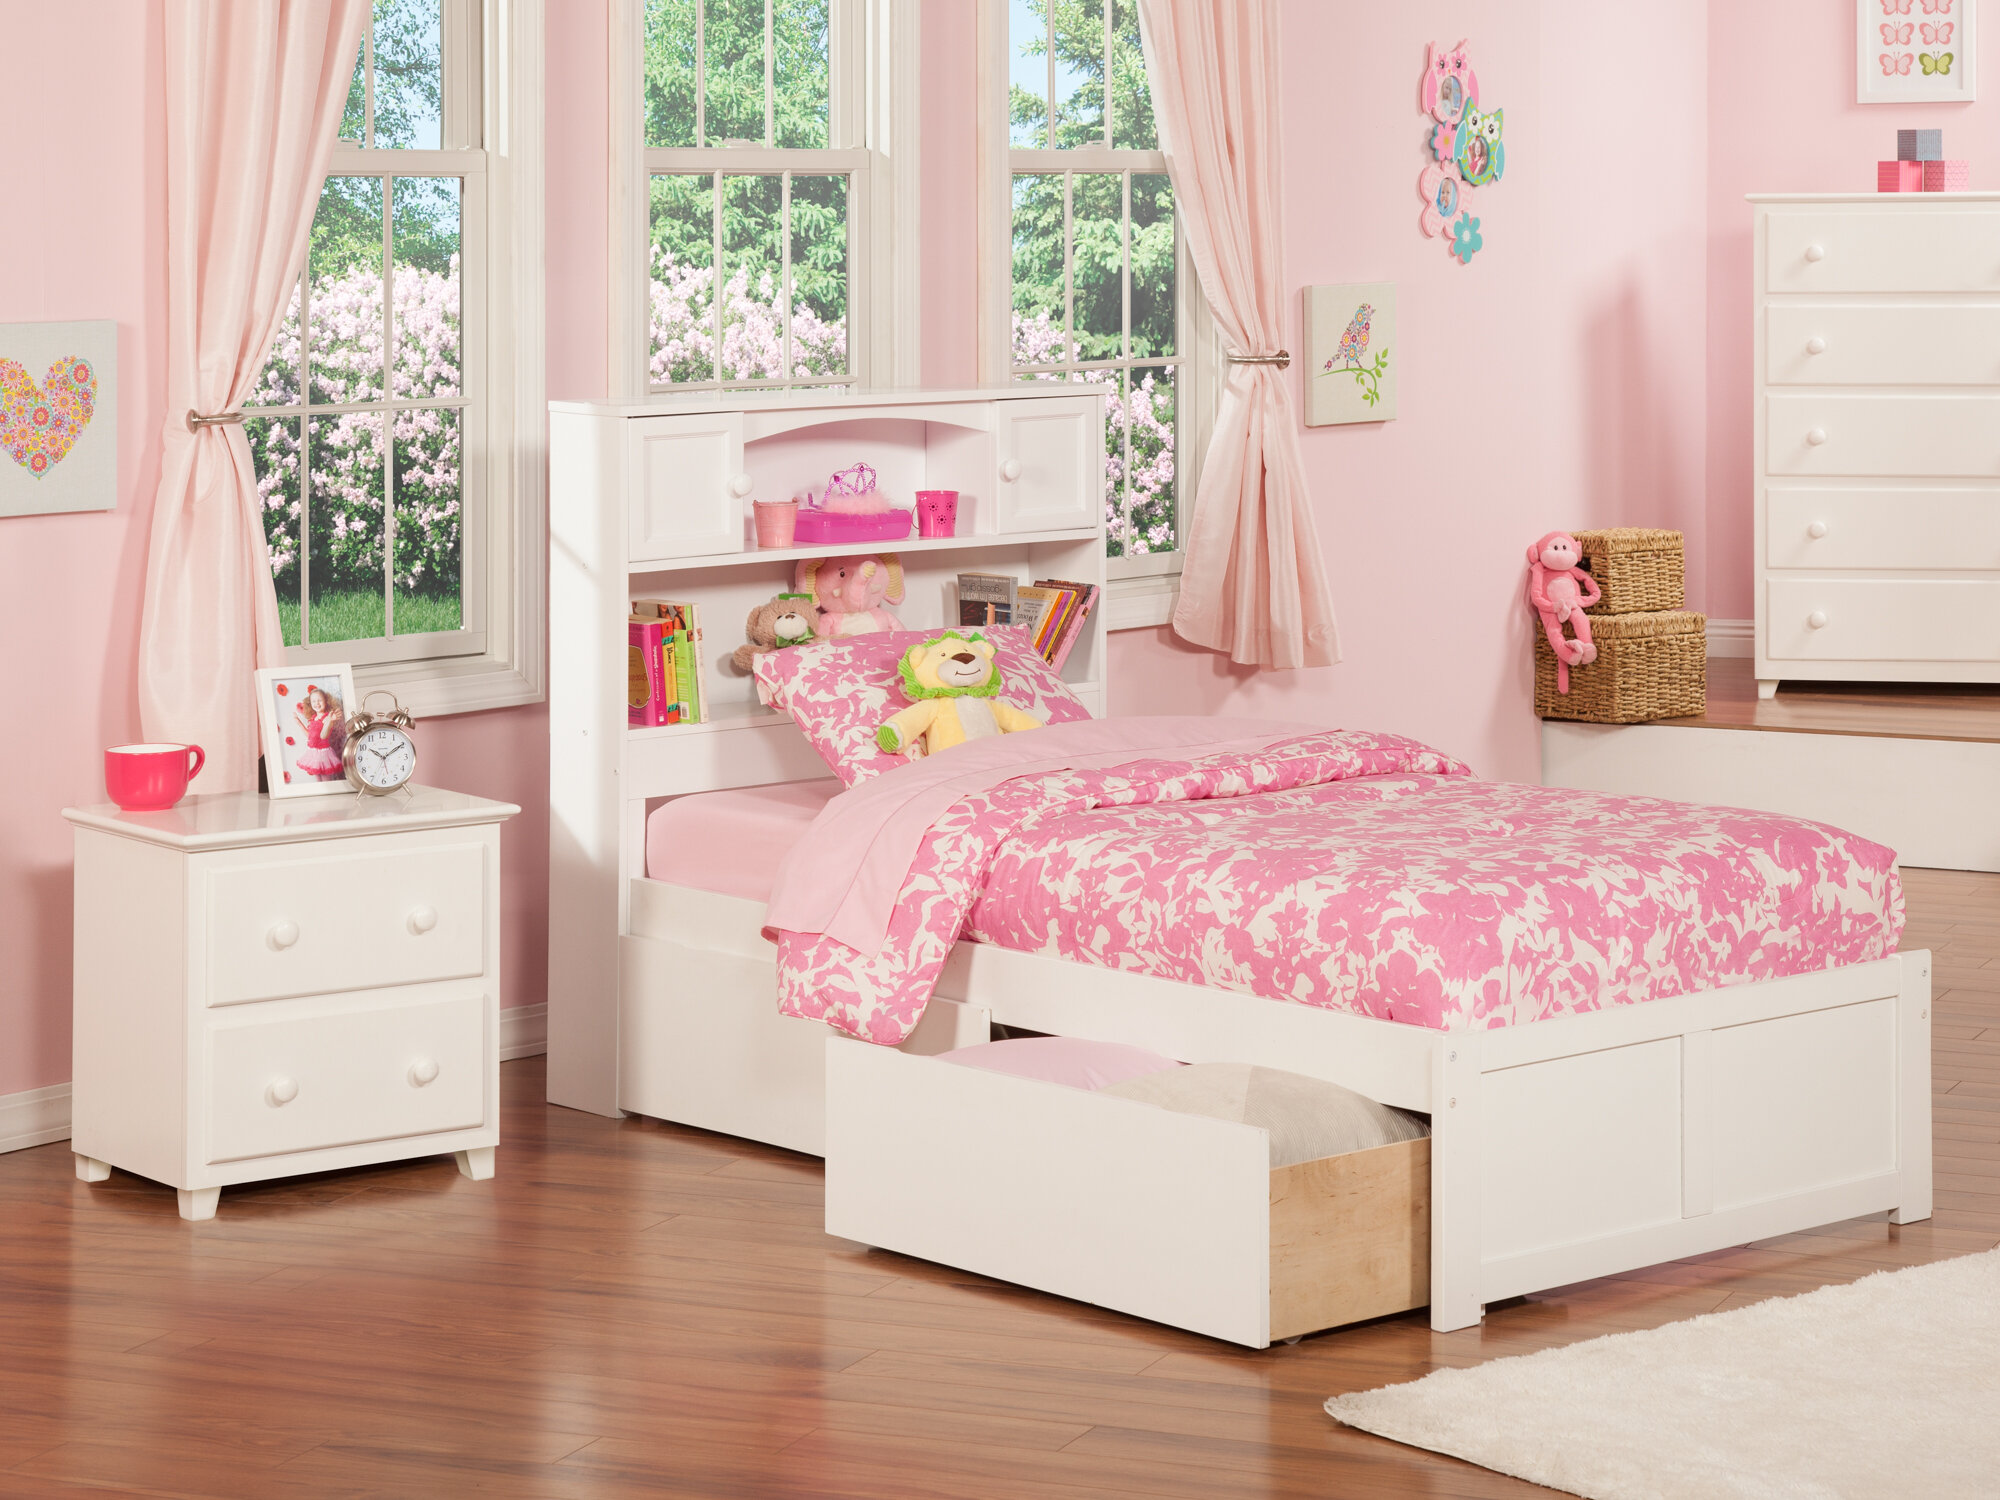 bedroom furniture sets for kids